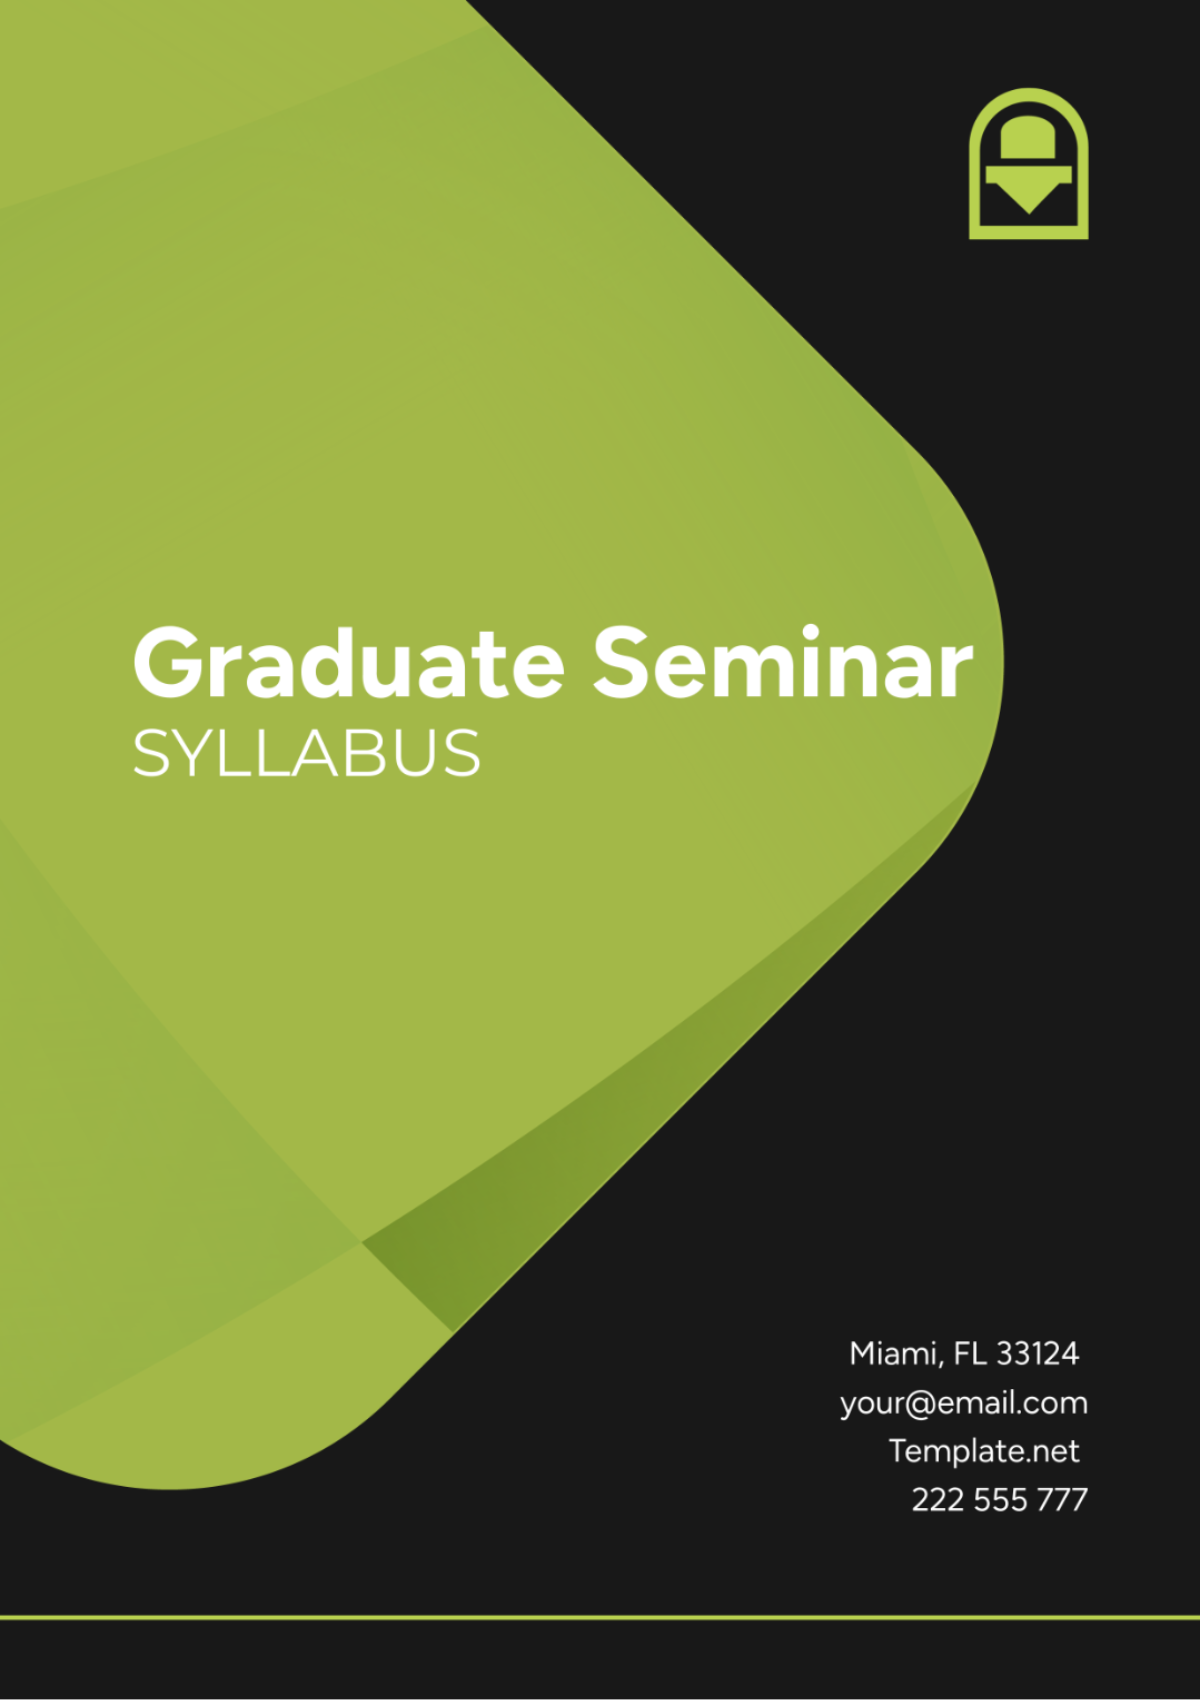 Graduate Seminar Syllabus Template